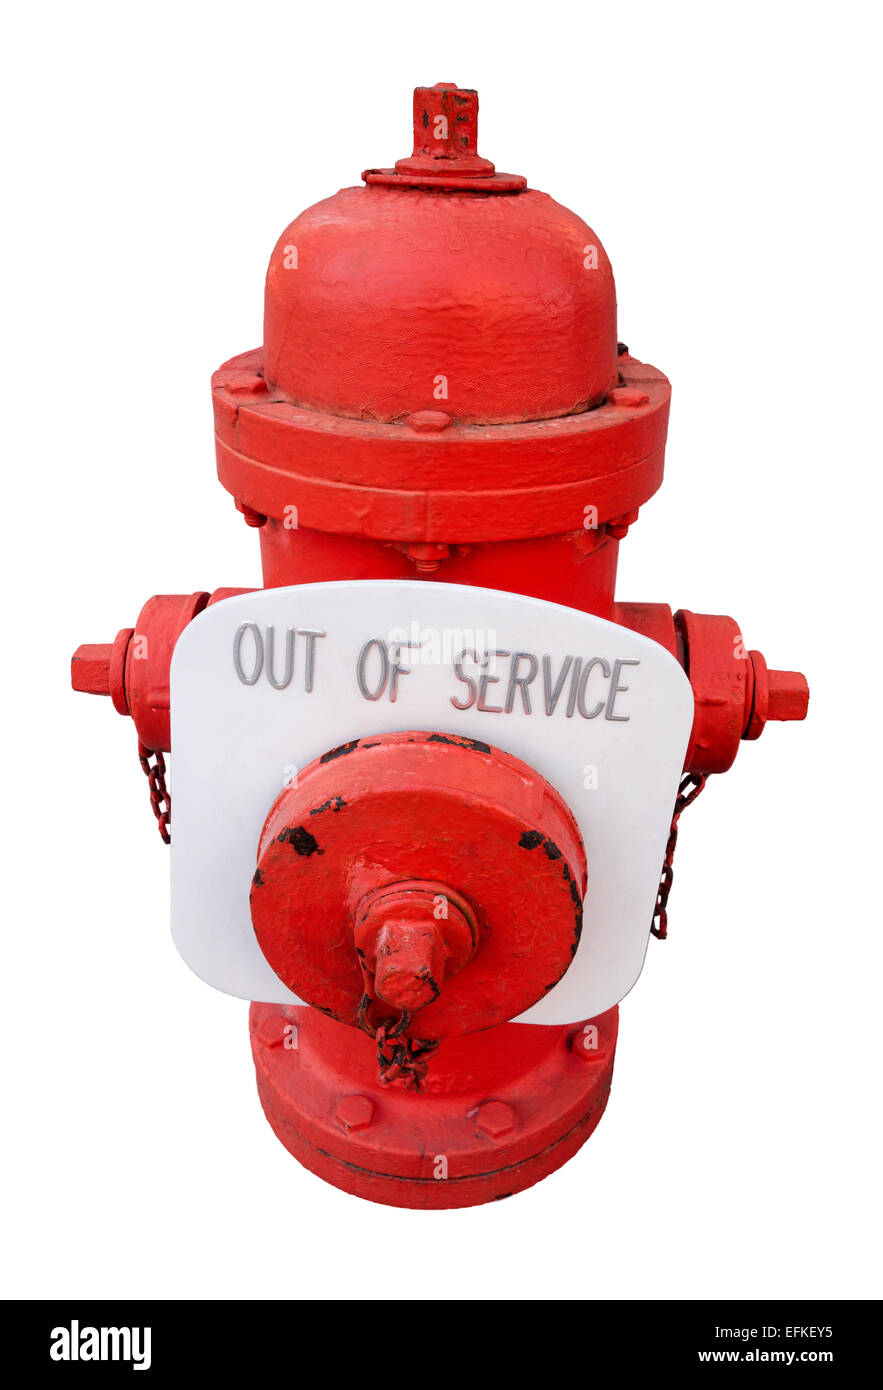 Nos rojo con hidrantes contra incendios fuera de servicio señal; no funciona, rotos, insegura, poco fiable fire plug. Problema de seguridad, preocupación. Foto de stock